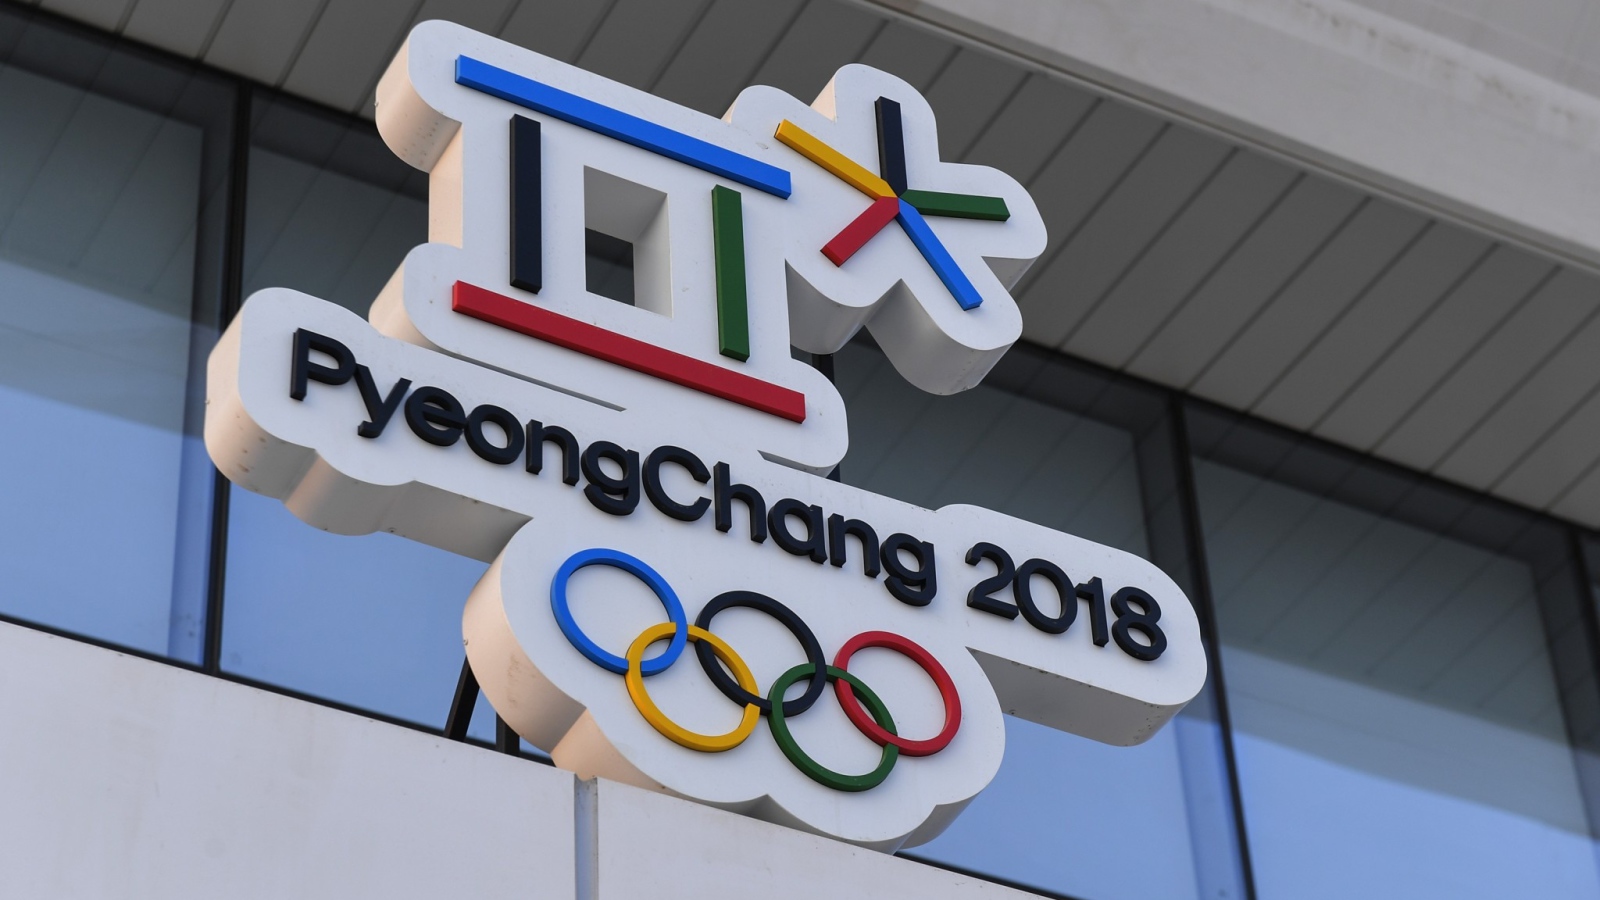 Логотип зимних Олимпийских игр 2018